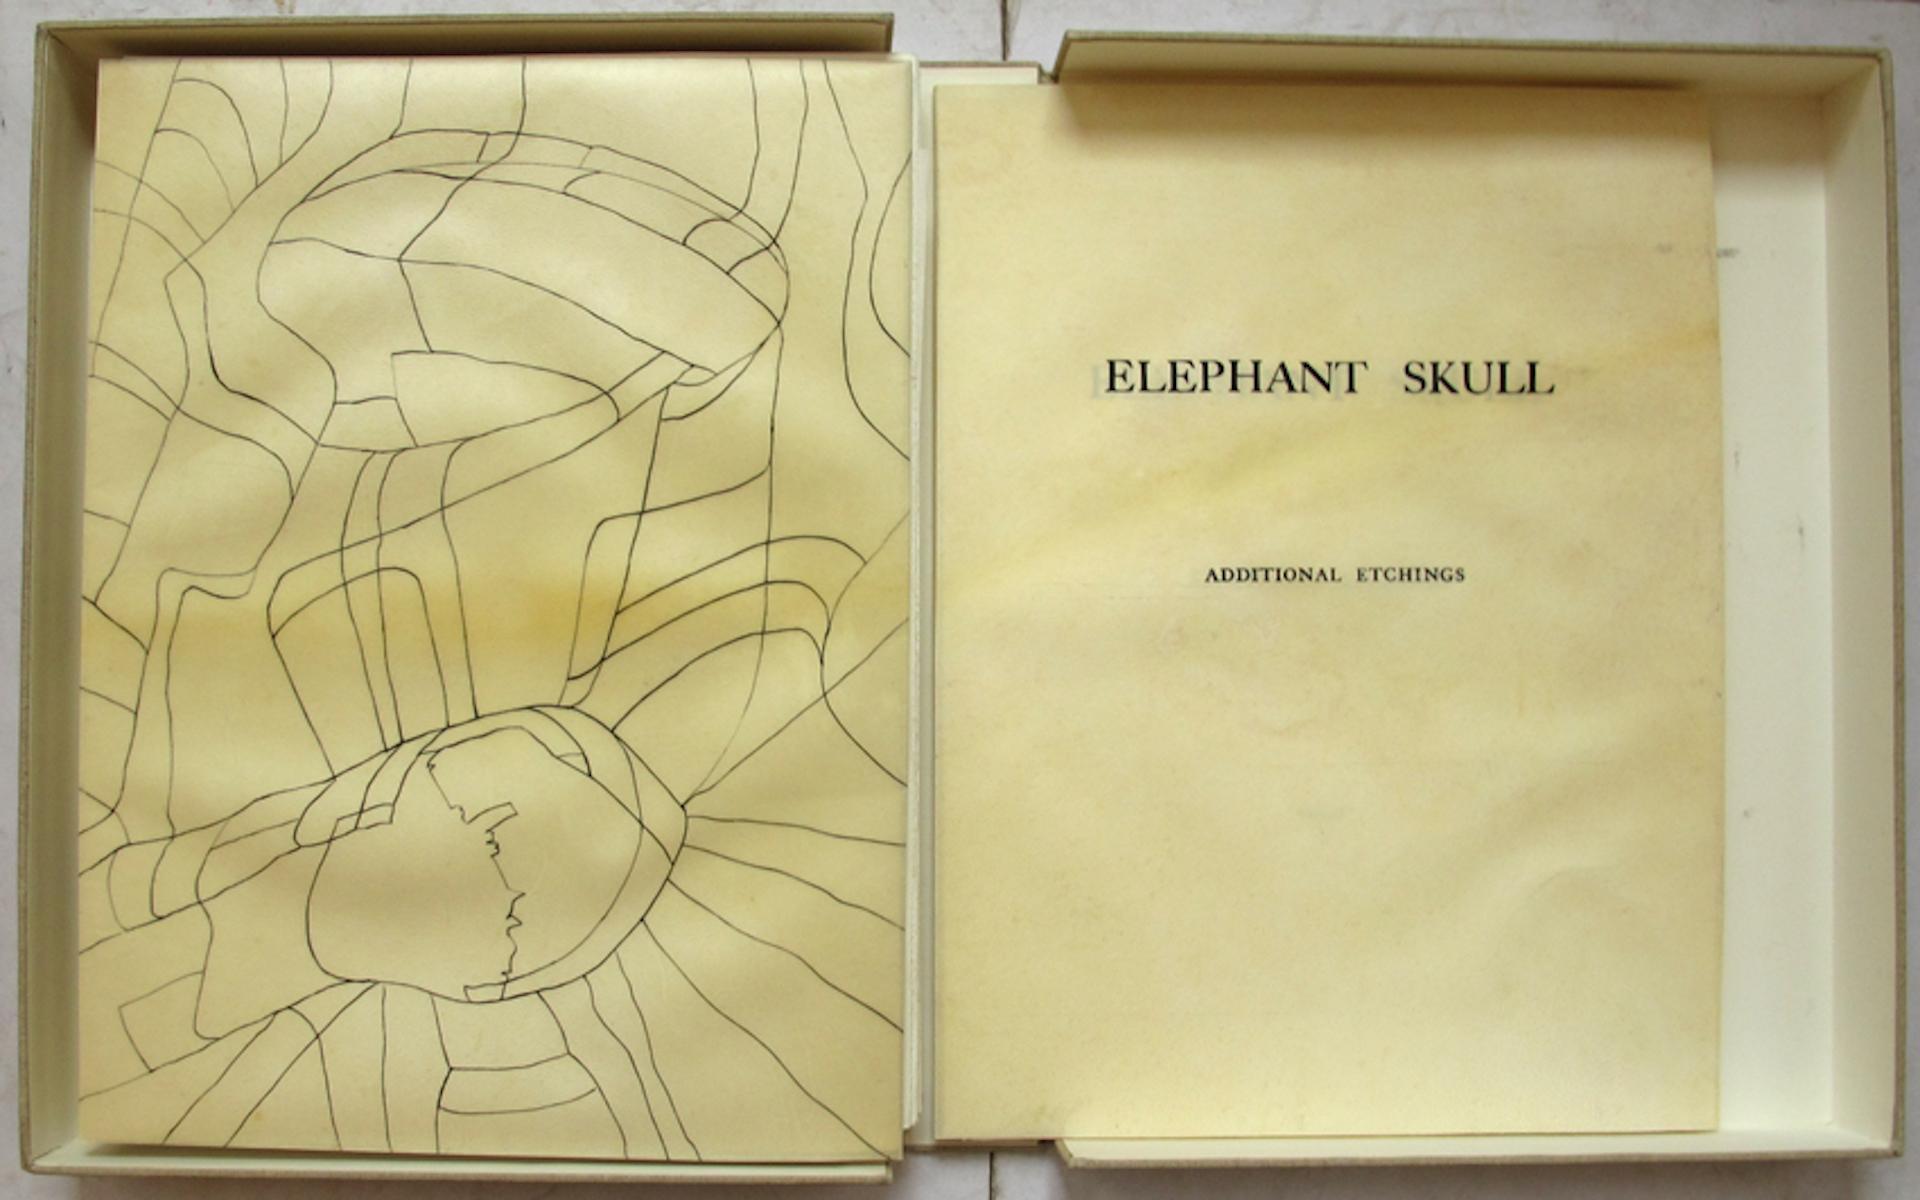 Elephant Skull - Original Etchings by Henry Moore - 1970 5